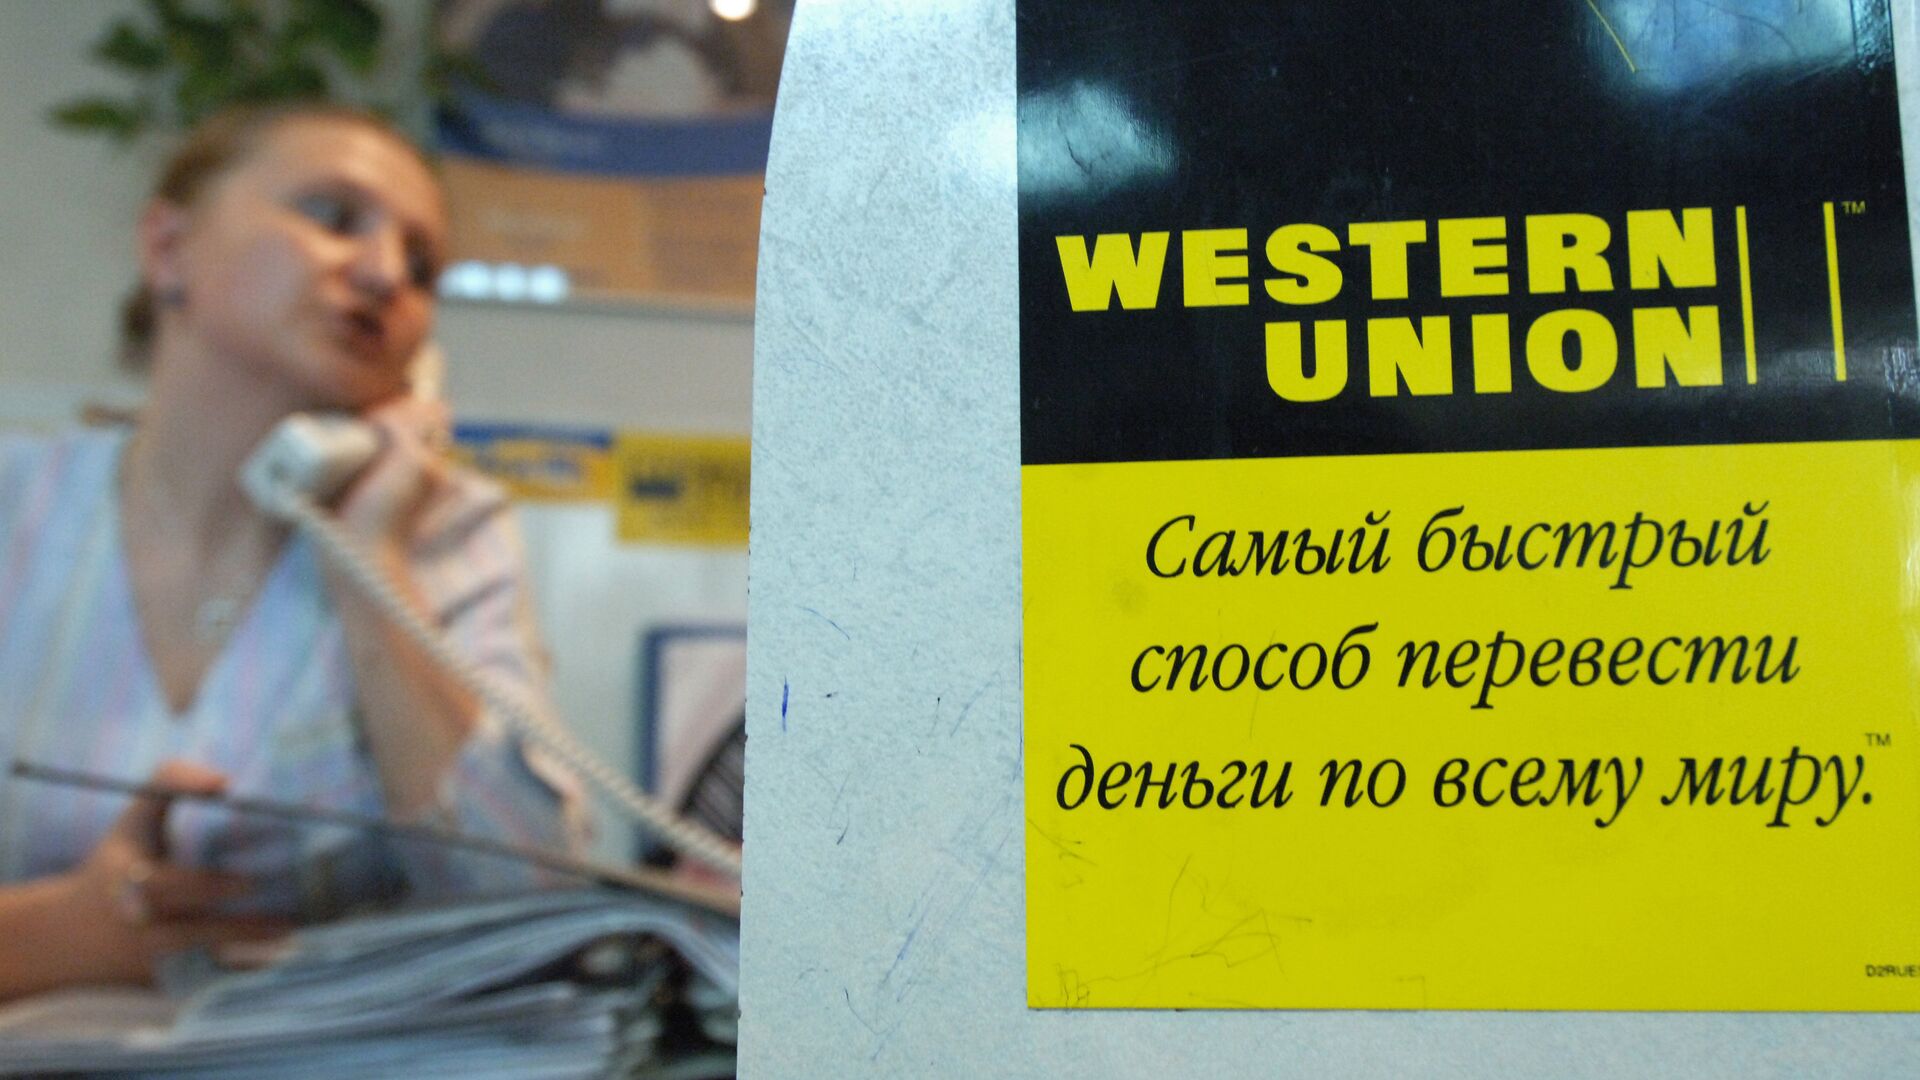 РБК: Western Union прекратит осуществлять переводы внутри России